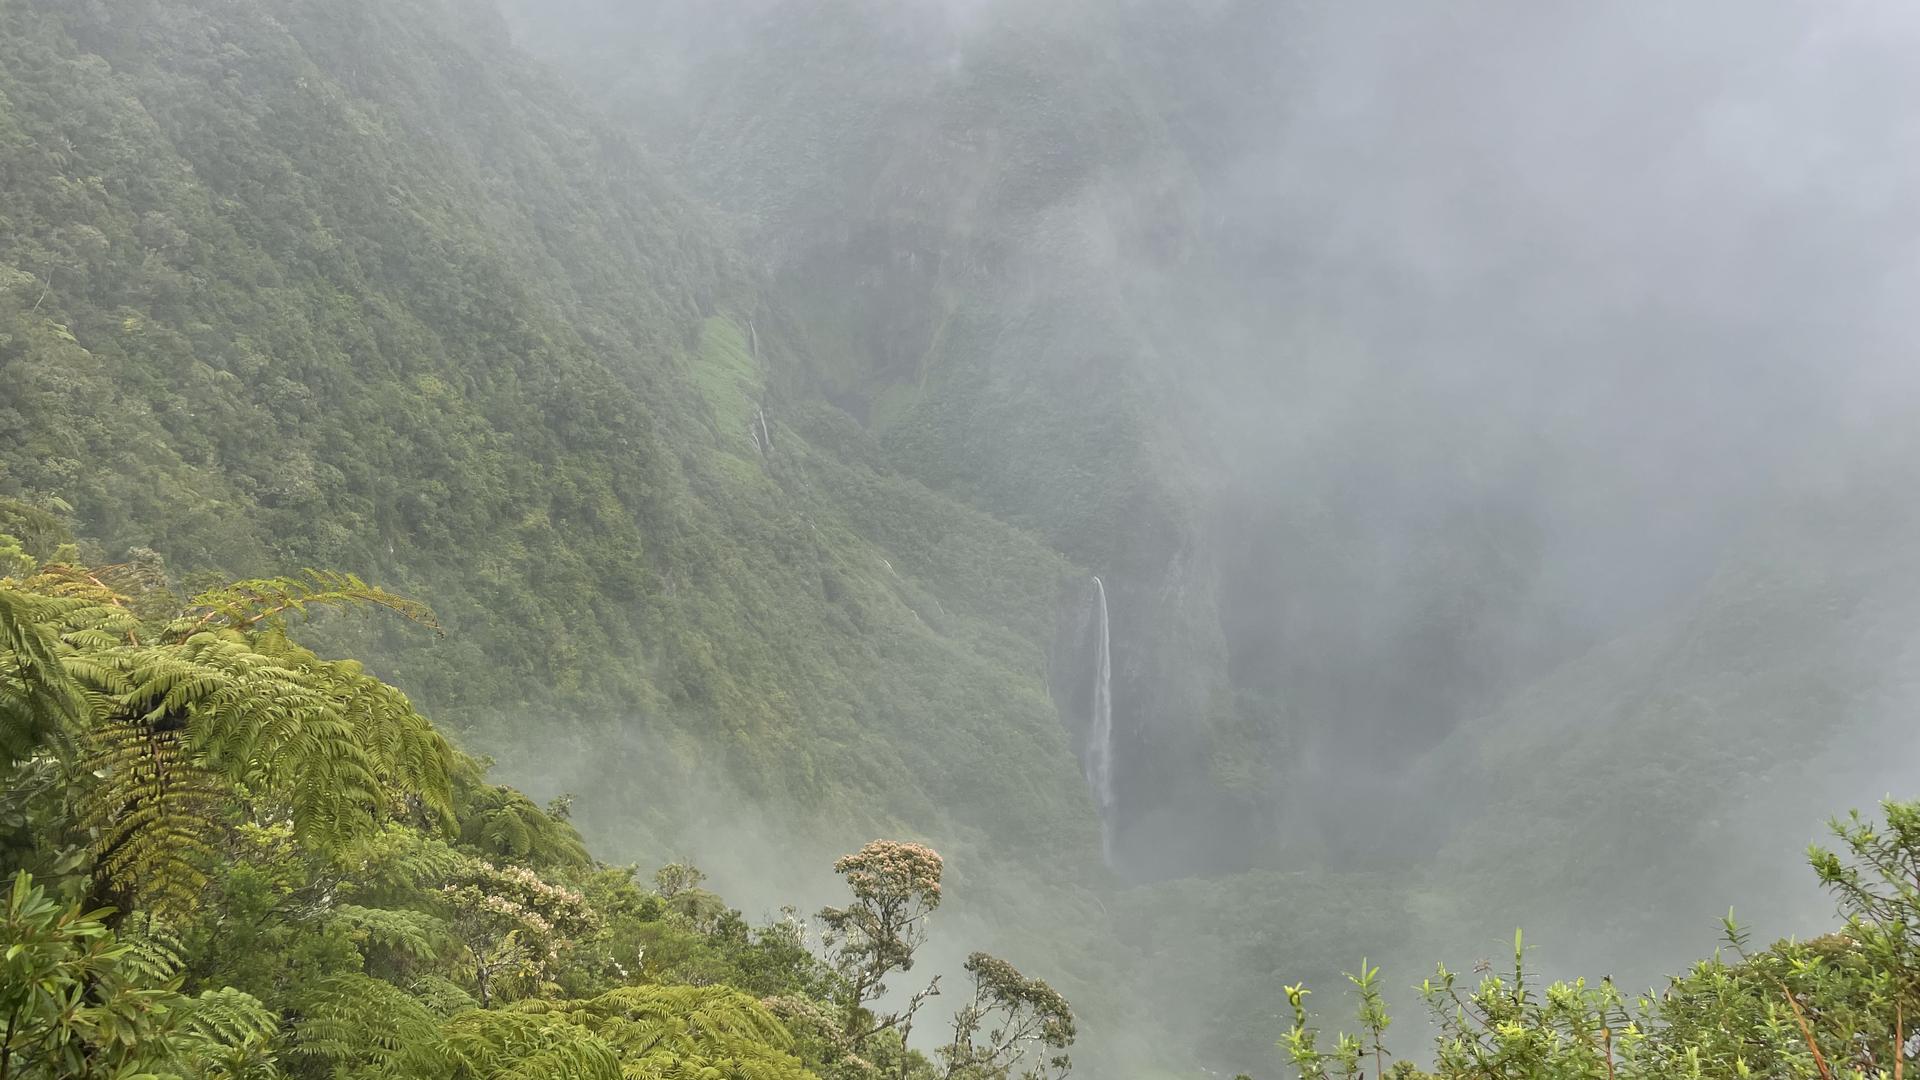 Der tropische Regenwald auf der Insel La Réunion im Indischen Ozean von Manfred Mohr aus Bretten.
